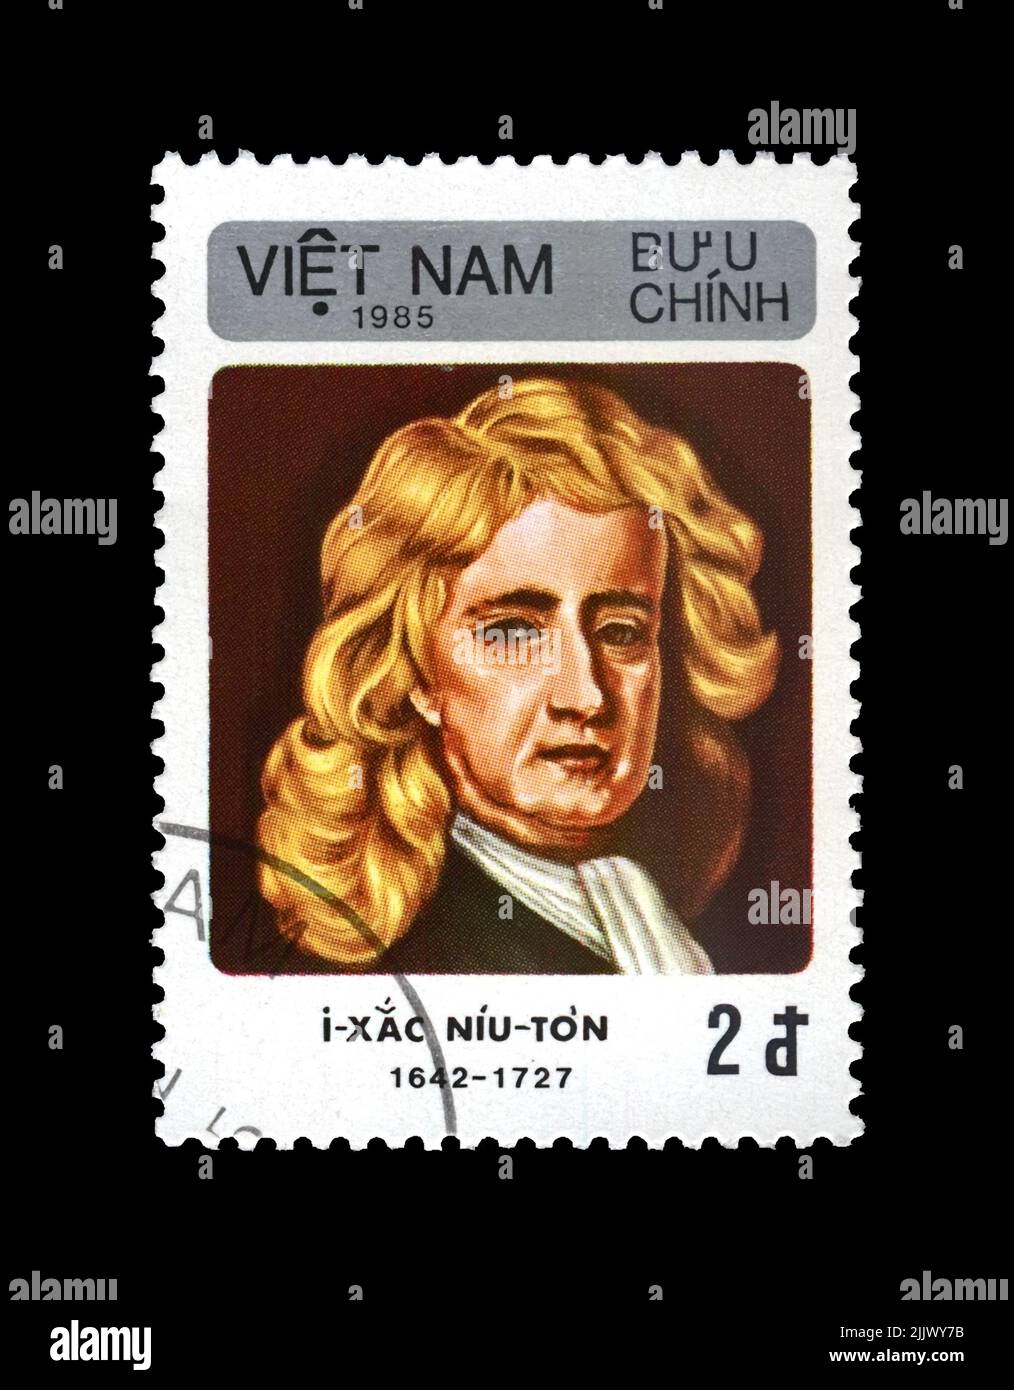 Isaac Newton (1642-1727), berühmter Wissenschaftler, Forscher, Mathematiker, Astronom, Beobachter, um 1985. Vintage Poststempel von Vietnam isoliert Stockfoto